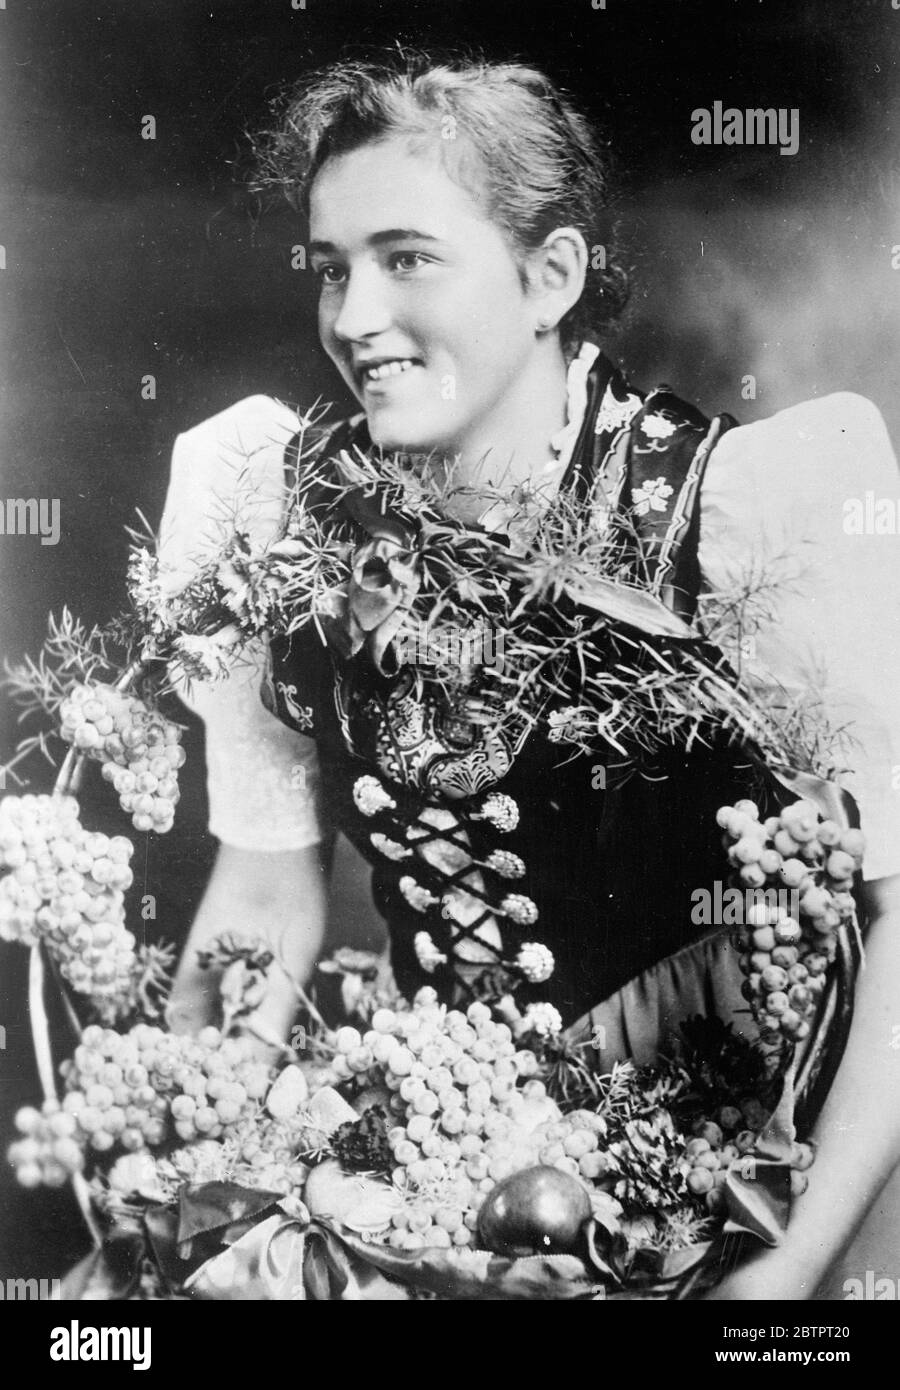 La Regina del vino della Germania. Fraulein Gustel Hauptmann, che è stata scelta regina tedesca del vino alla festa della vendemmia a Neustadt nel Palatino. Fraulein Hauptmannn proviene dal villaggio vinicolo di Haardt vicino Neustadt. 26 ottobre 1937 Foto Stock